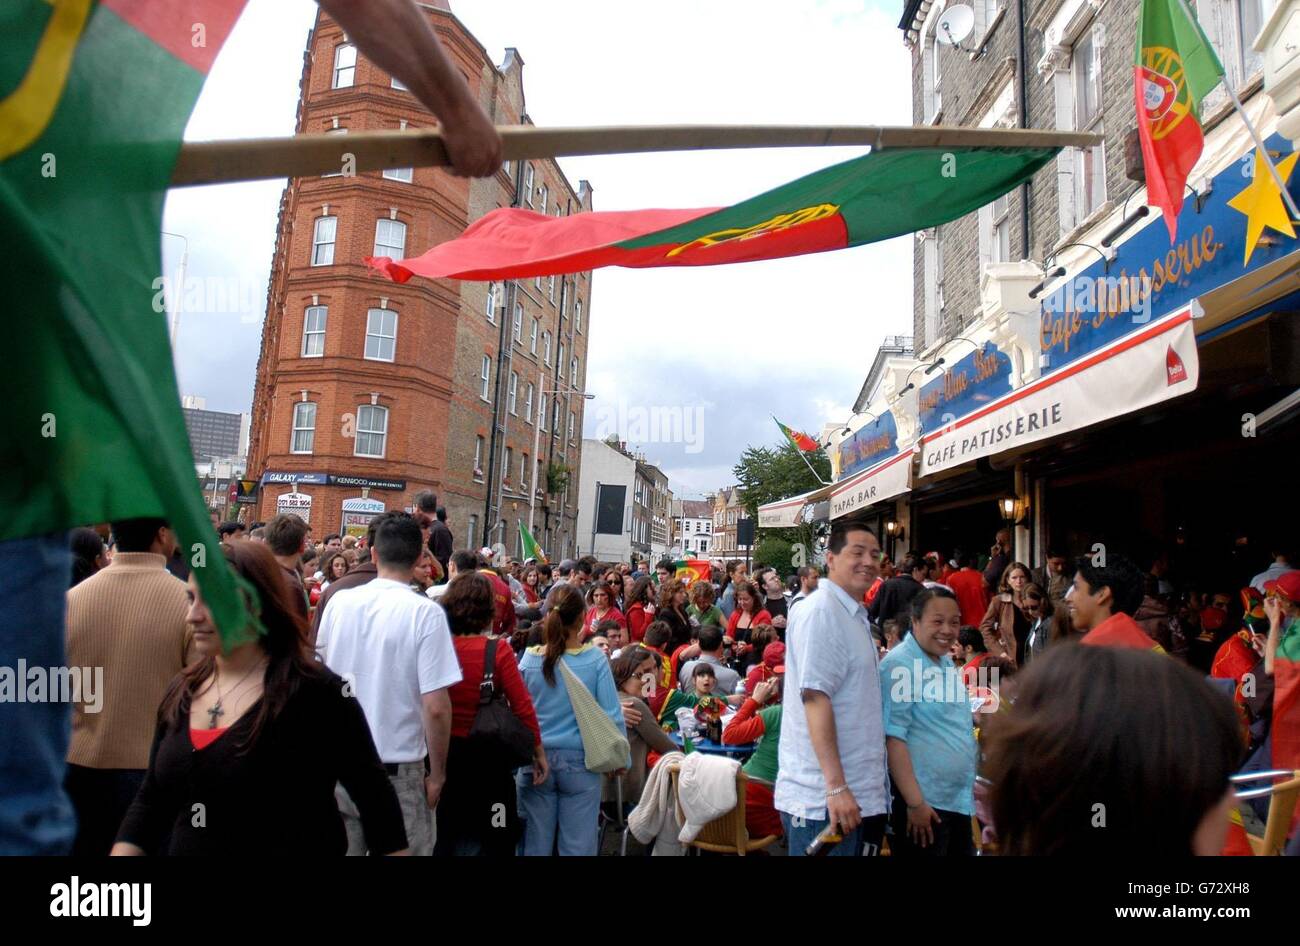 Les fans portugais se réunissent sur South Lambeth Road à Londres pour soutenir leur équipe nationale de football portugais qui joue ce soir contre la Grèce à Lisbonne en finale de l'Euro 2004. Banque D'Images